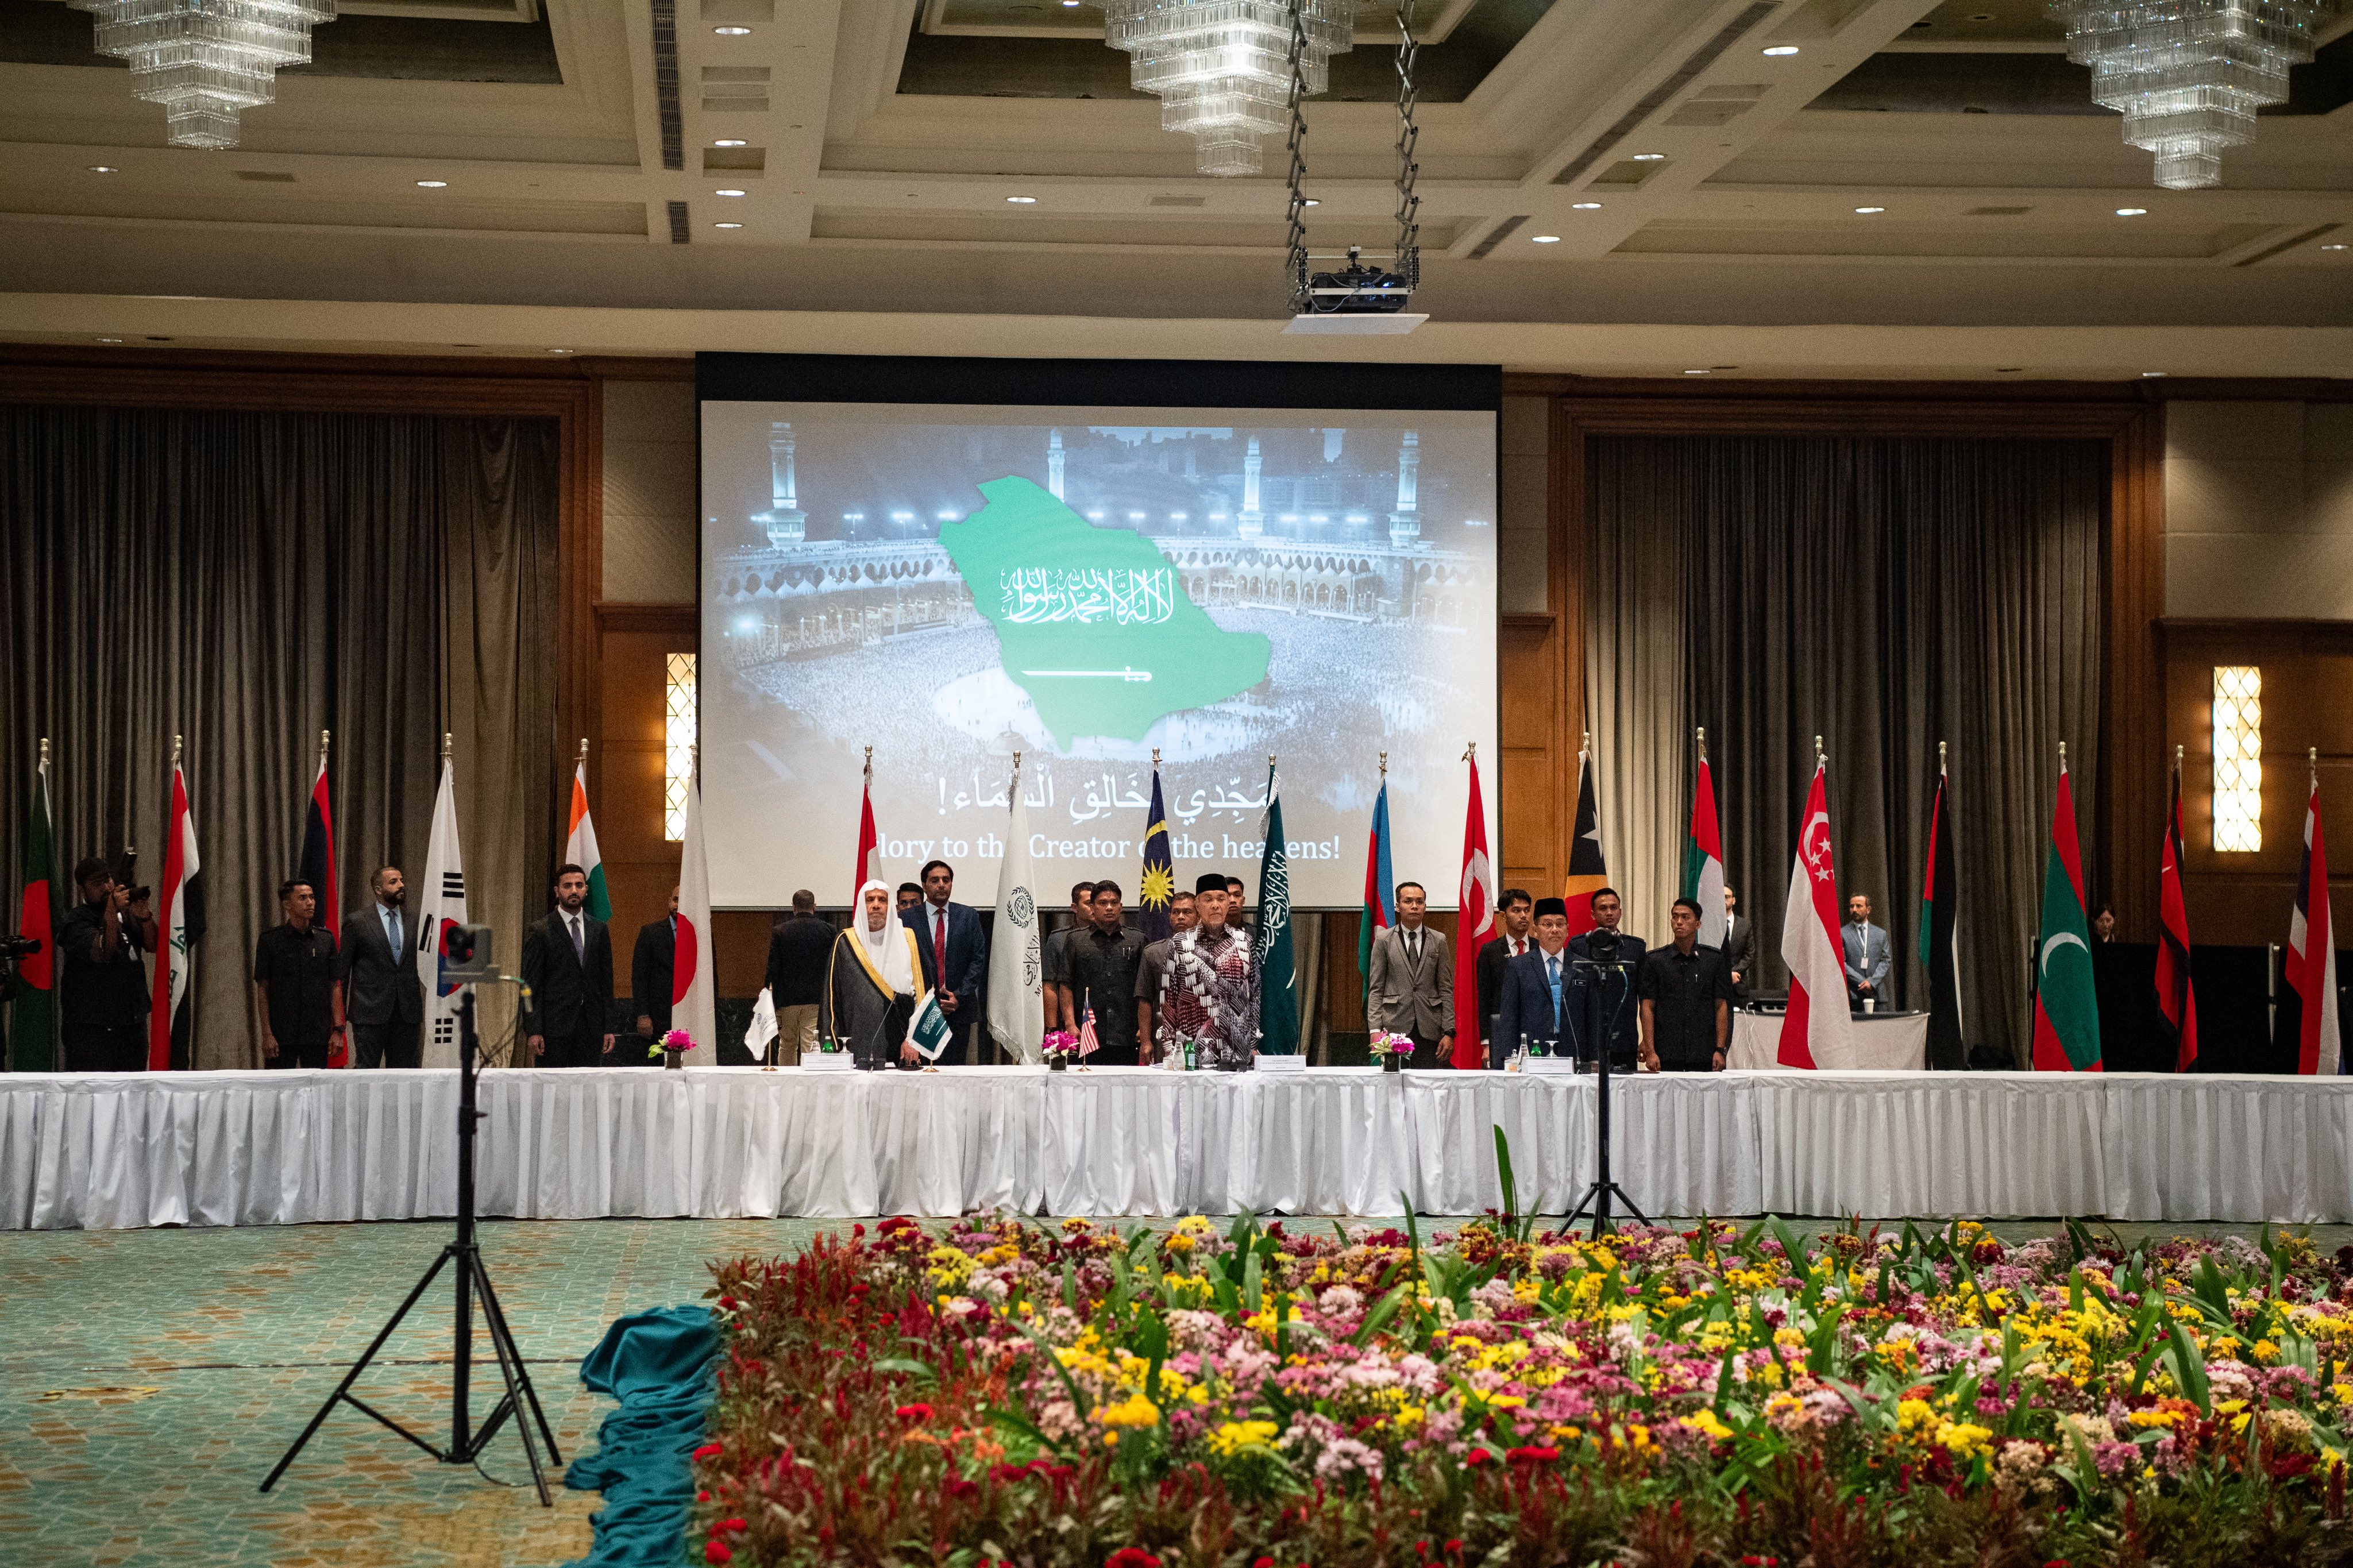 جناب دبیرکل، آقای دکتر شیخ محمد العیسی ، همراه با معاون نخست وزیر مالزی، «شورای علمای آسیان» را در پایتخت کوالالامپور، با حمایت نخست وزیر و زیر سایه چتر سازمان همبستگی جهان اسلام افتتاح نمود.